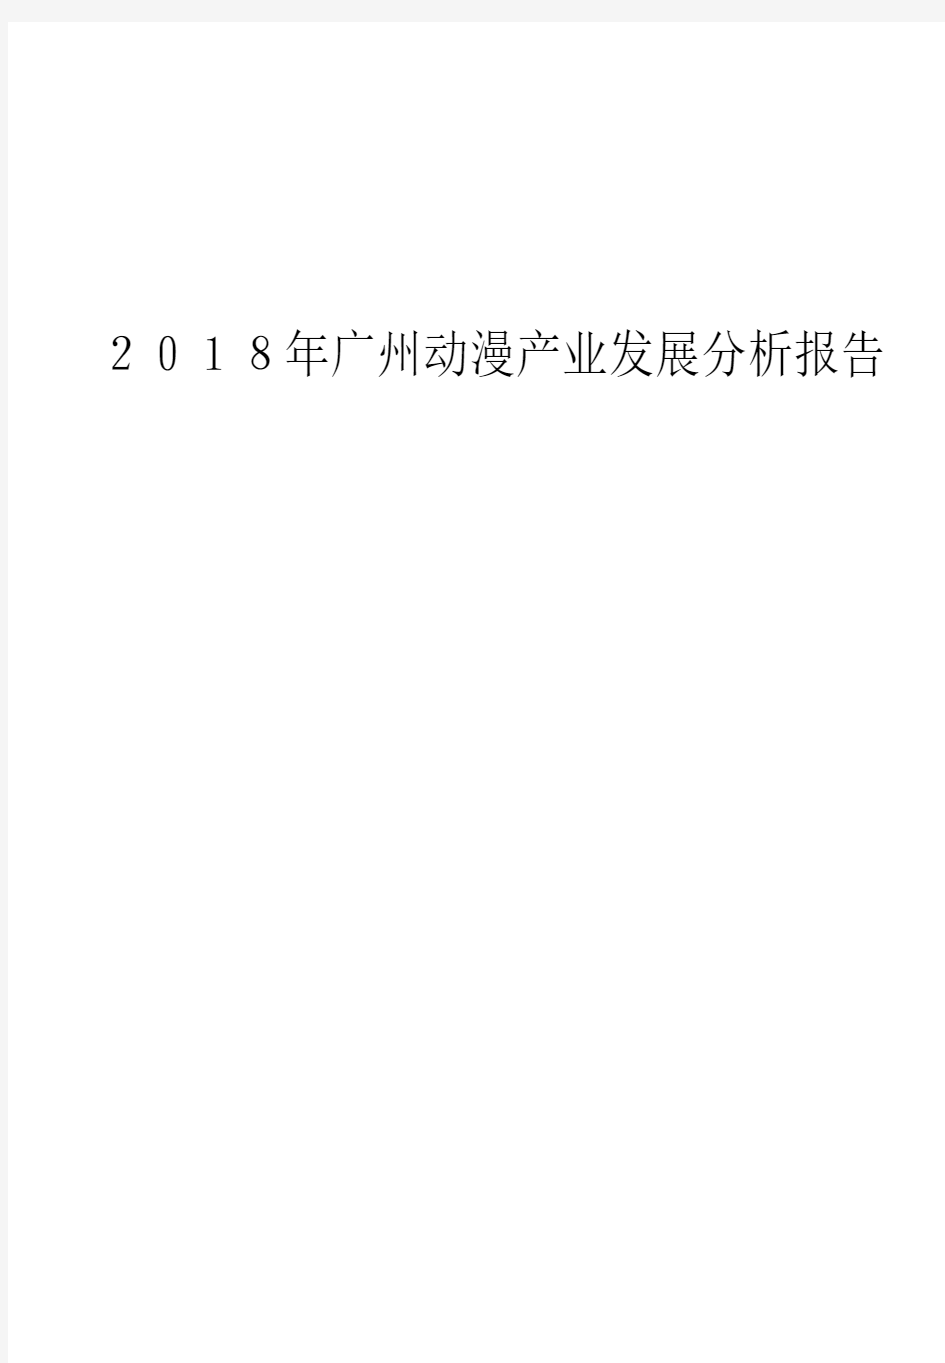 2018年广州动漫产业发展分析报告